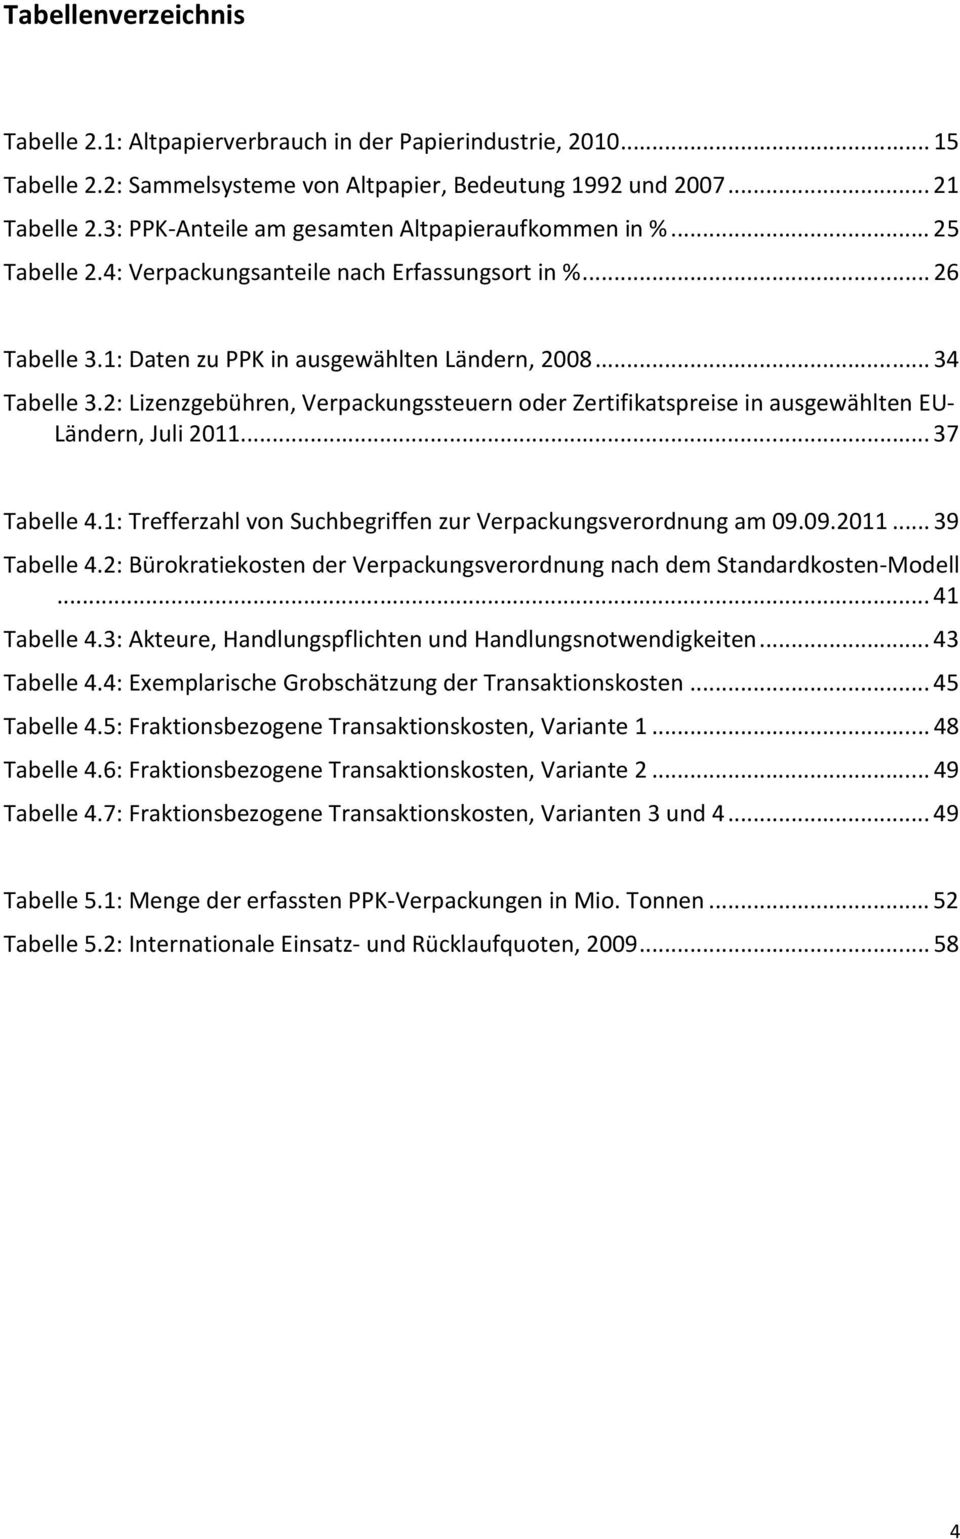 2: Lizenzgebühren, Verpackungssteuern oder Zertifikatspreise in ausgewählten EU- Ländern, Juli 2011...37 Tabelle 4.1: Trefferzahl von Suchbegriffen zur Verpackungsverordnung am 09.09.2011...39 Tabelle 4.